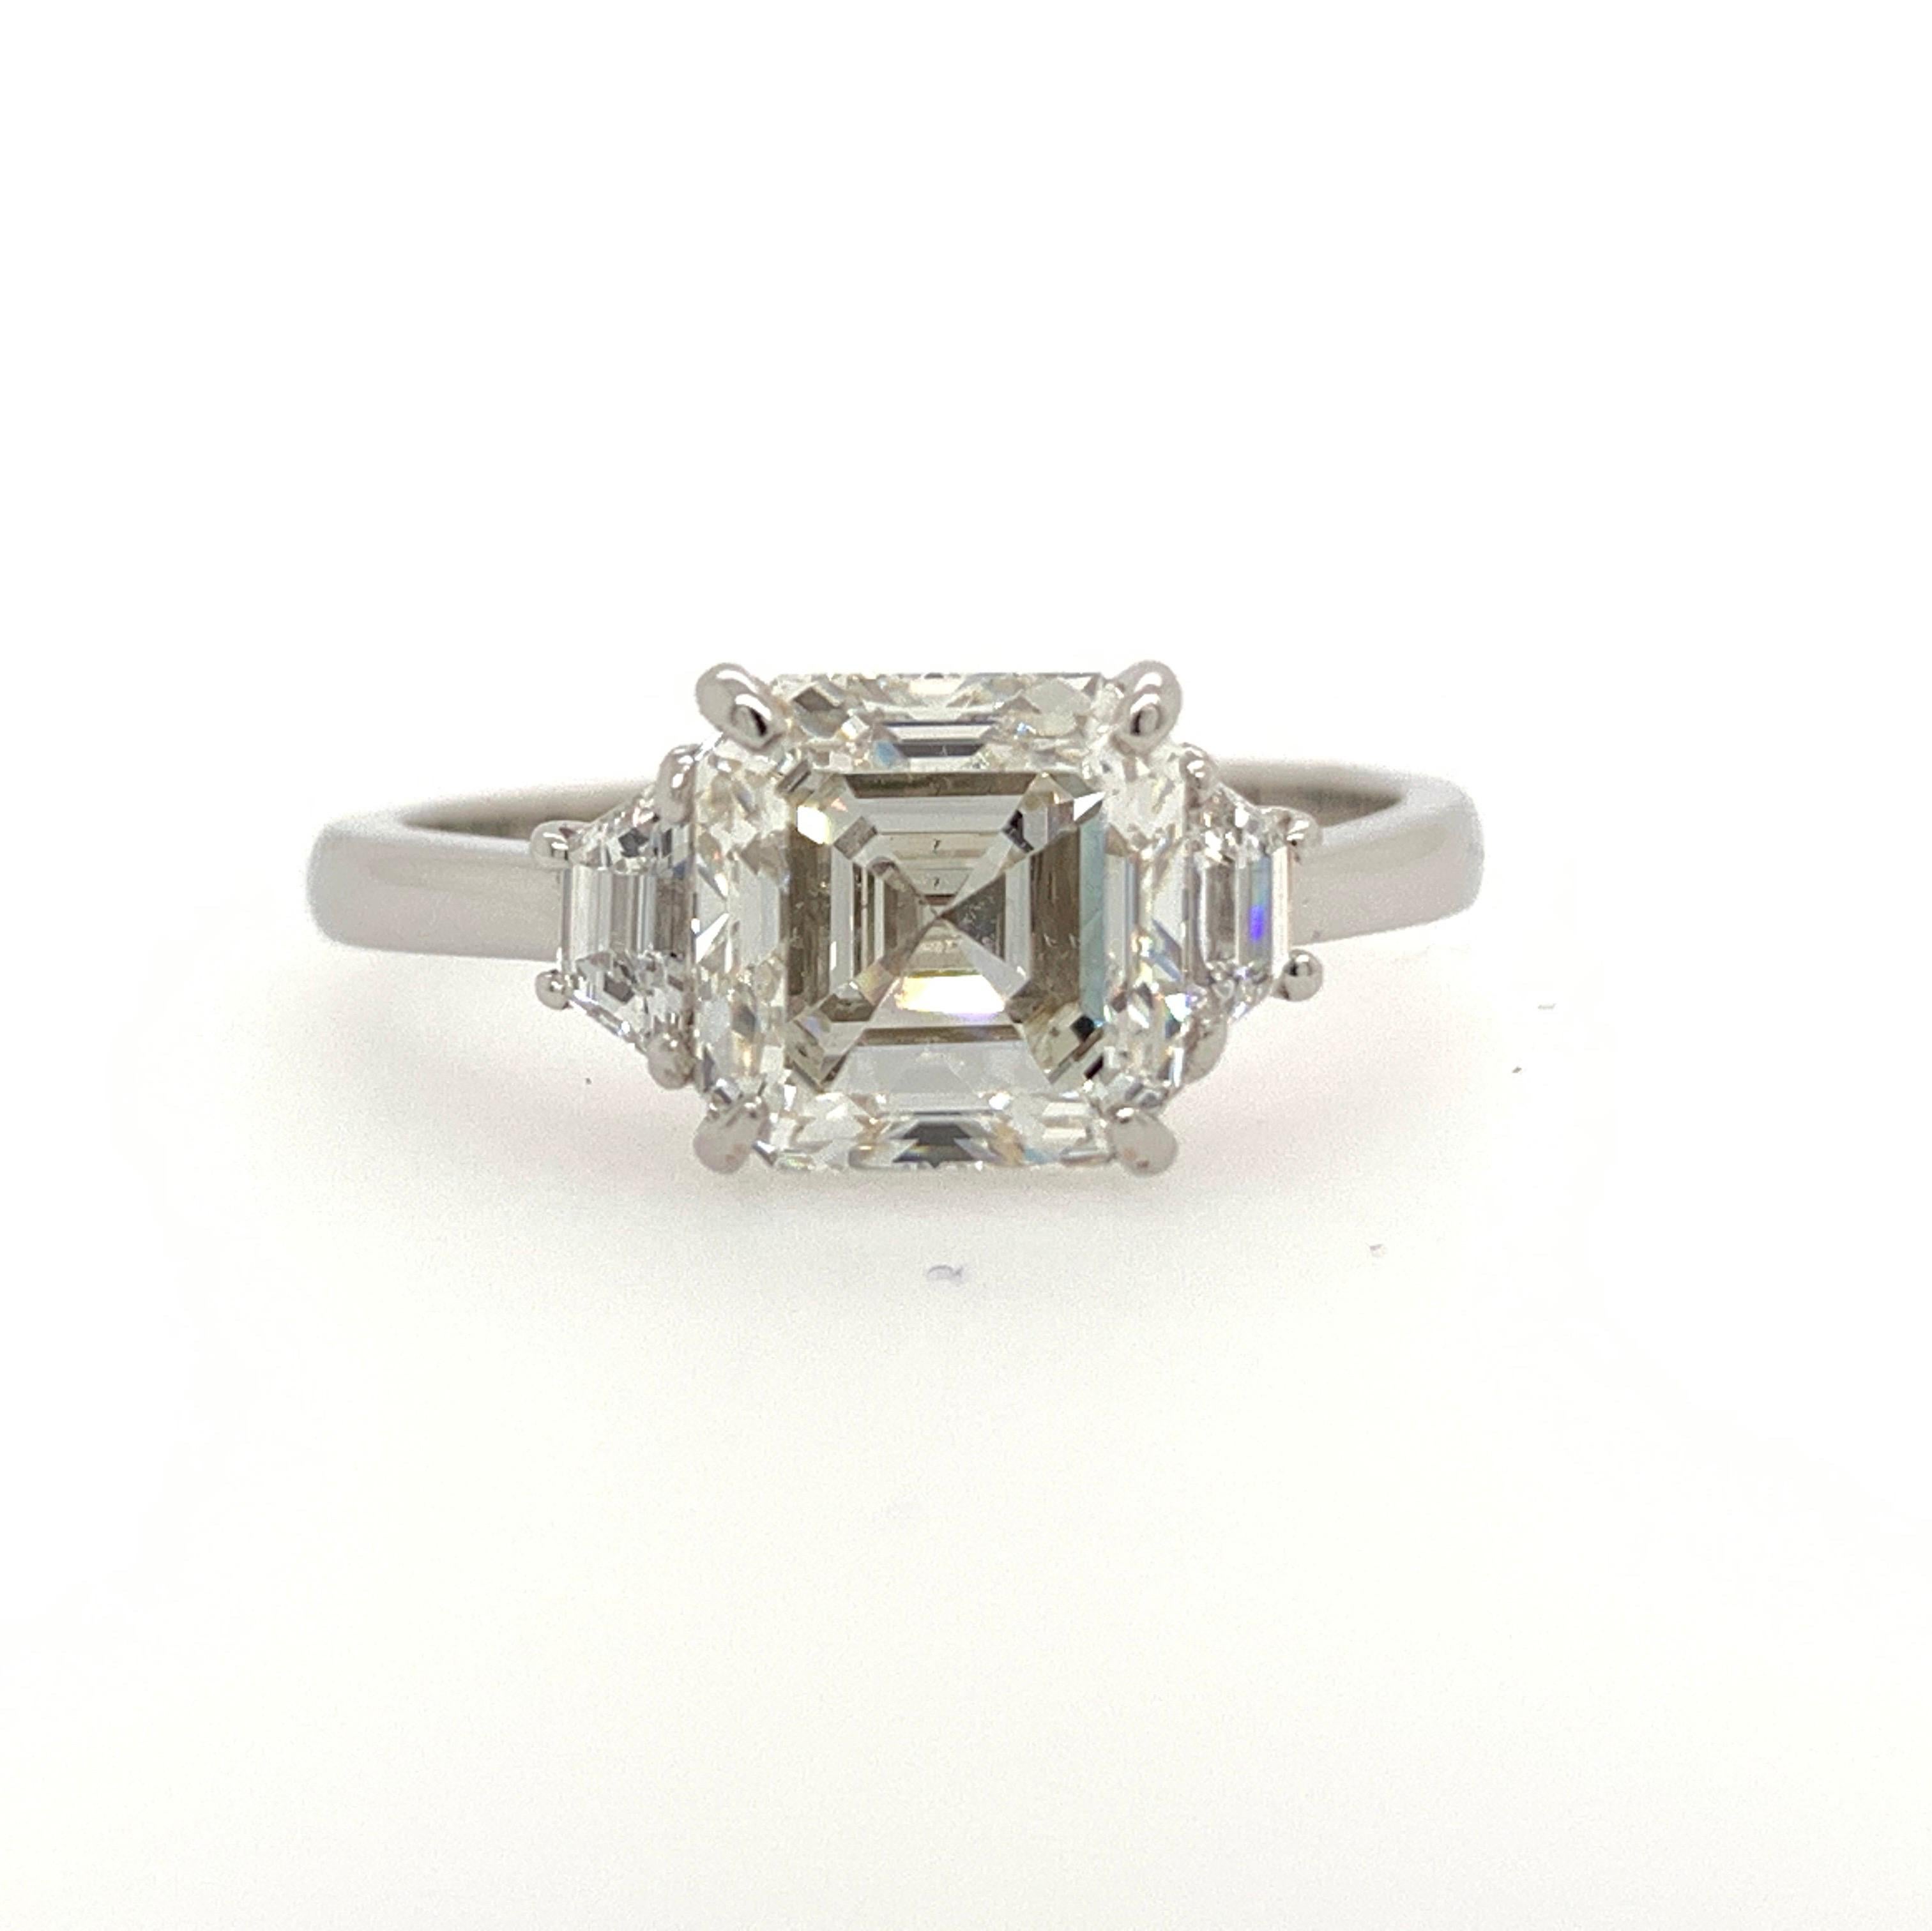  Square Emerald Cut Diamond Ring GIA 2.11 Carat I VS2  1